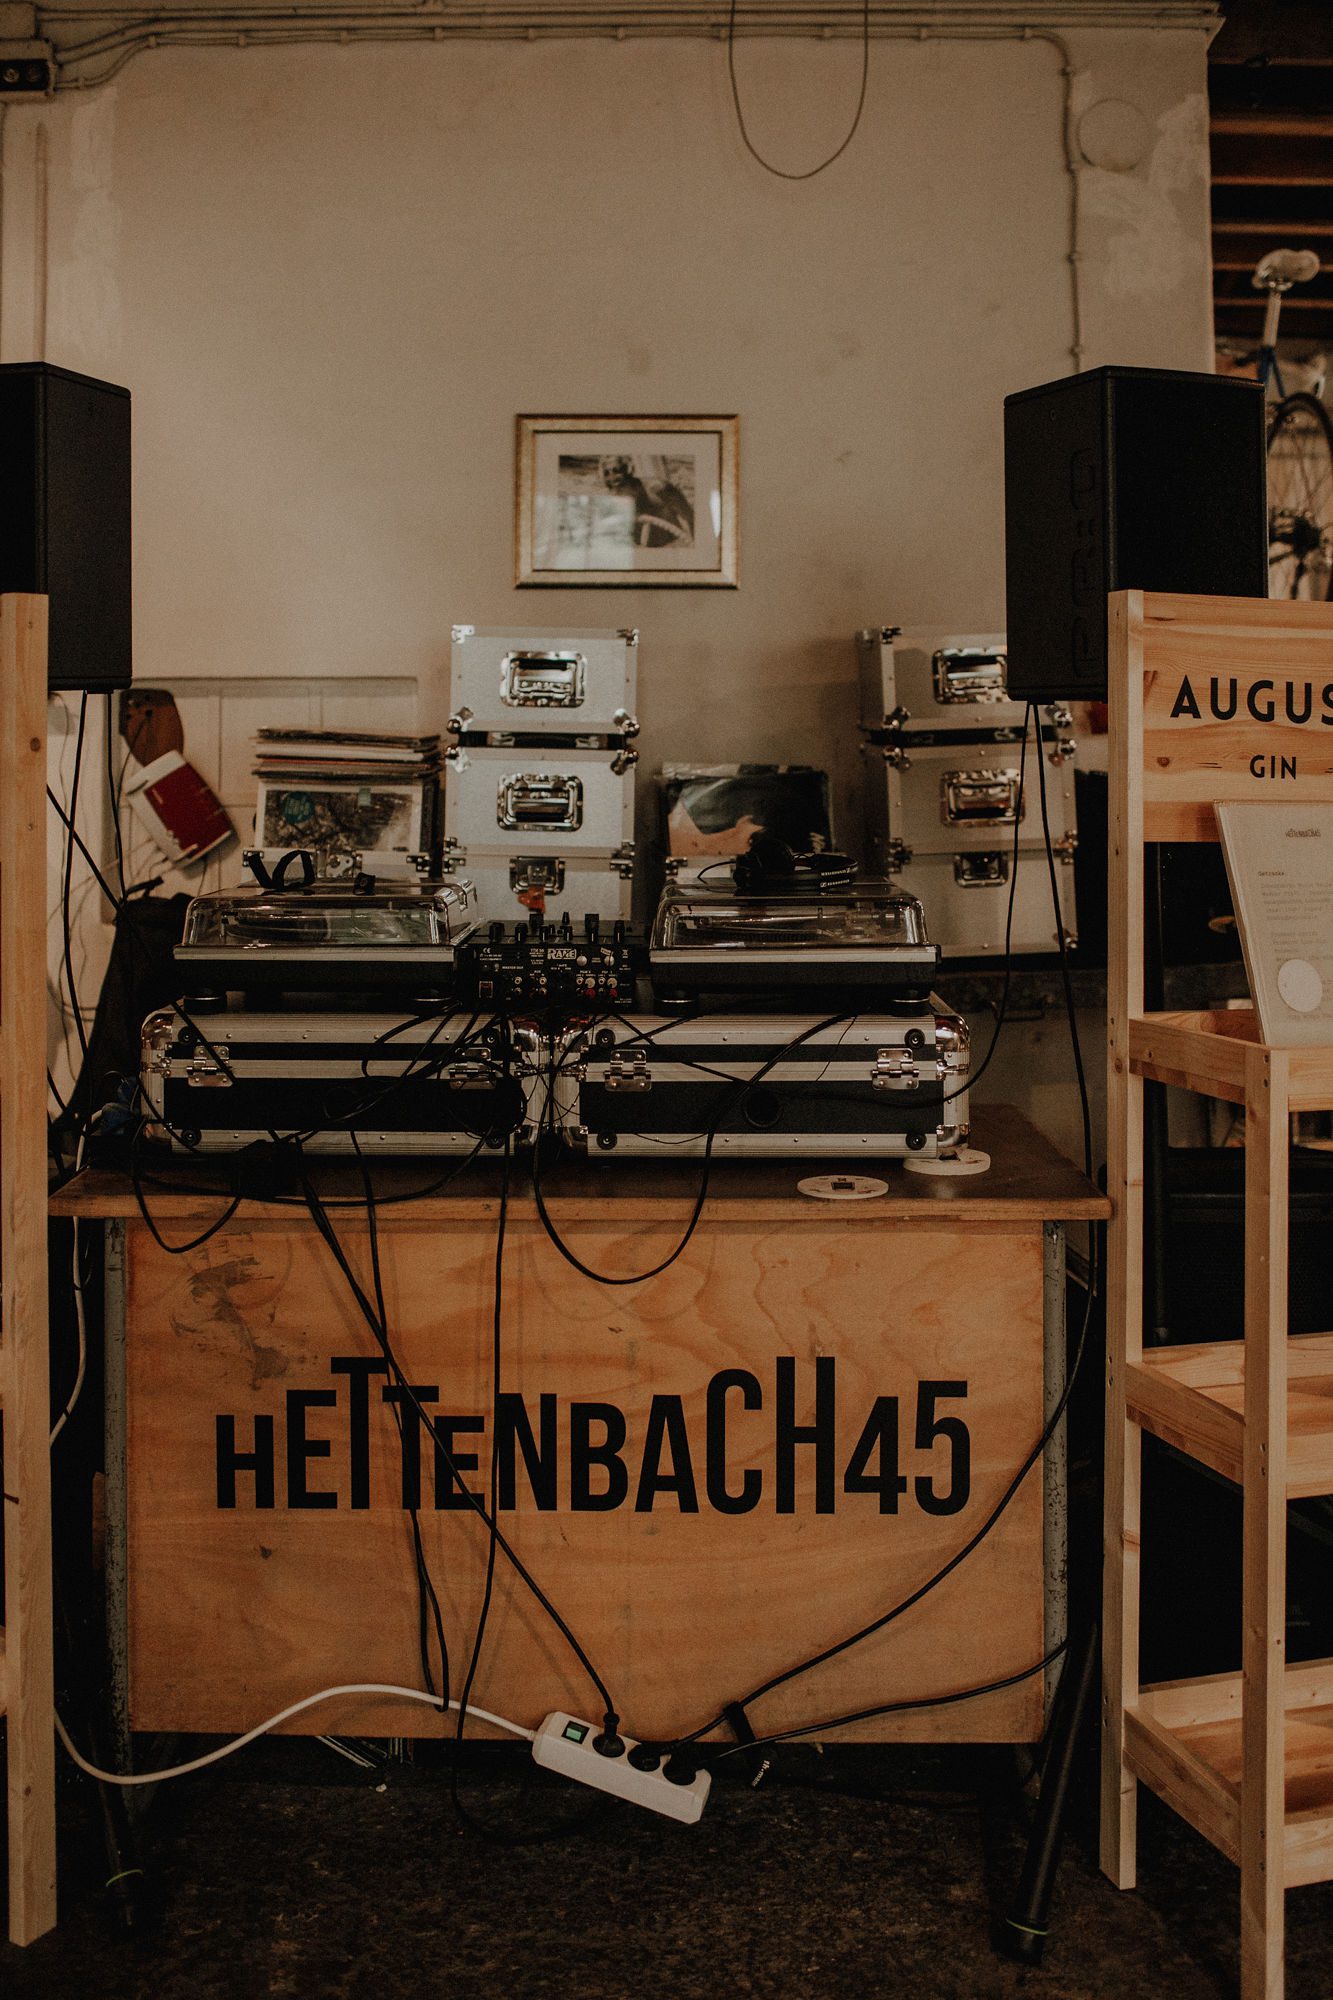 Hettenbach45 Sound